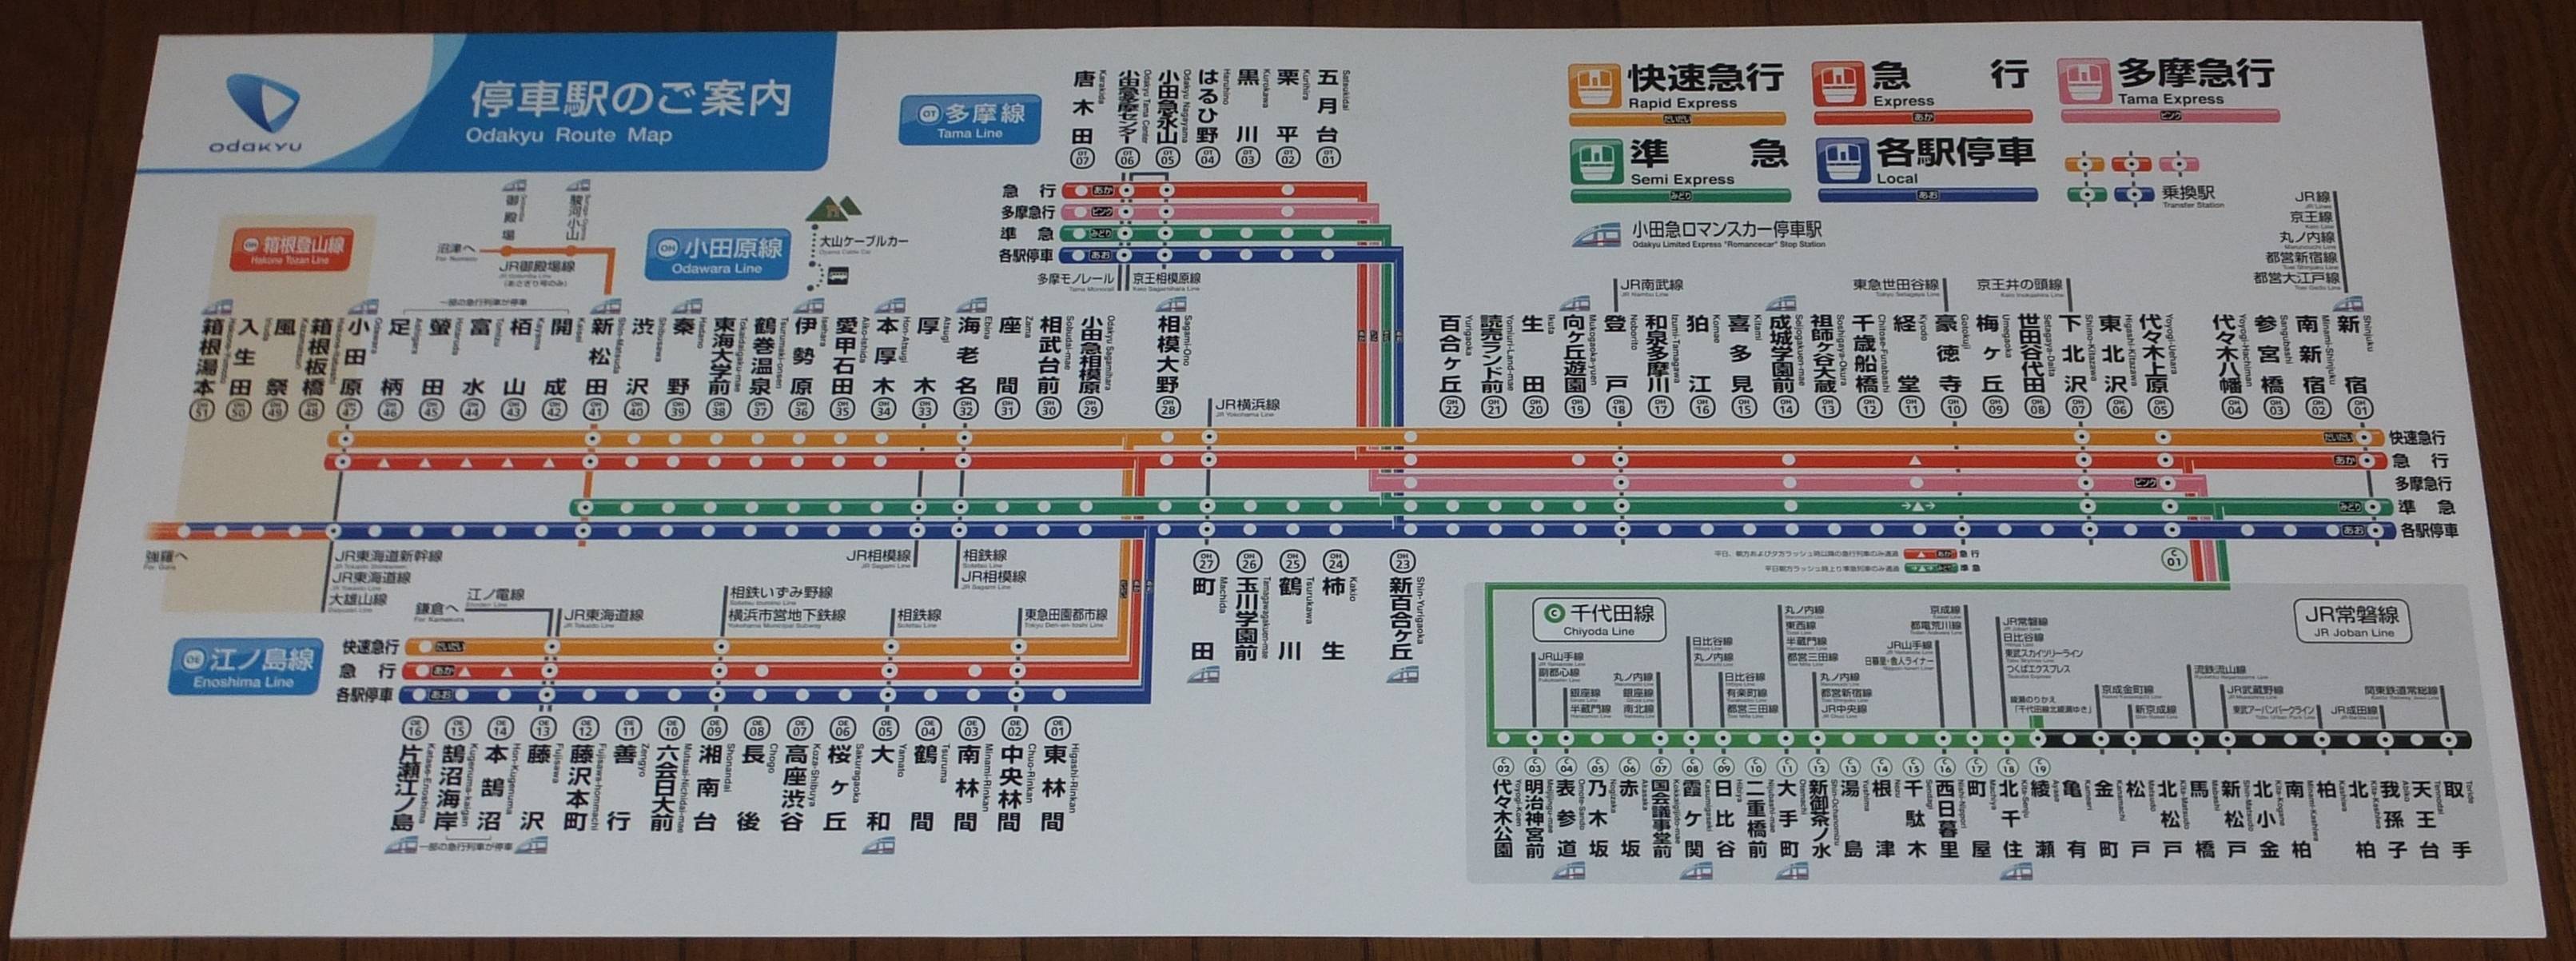 小田急 江ノ島 線 路線 図